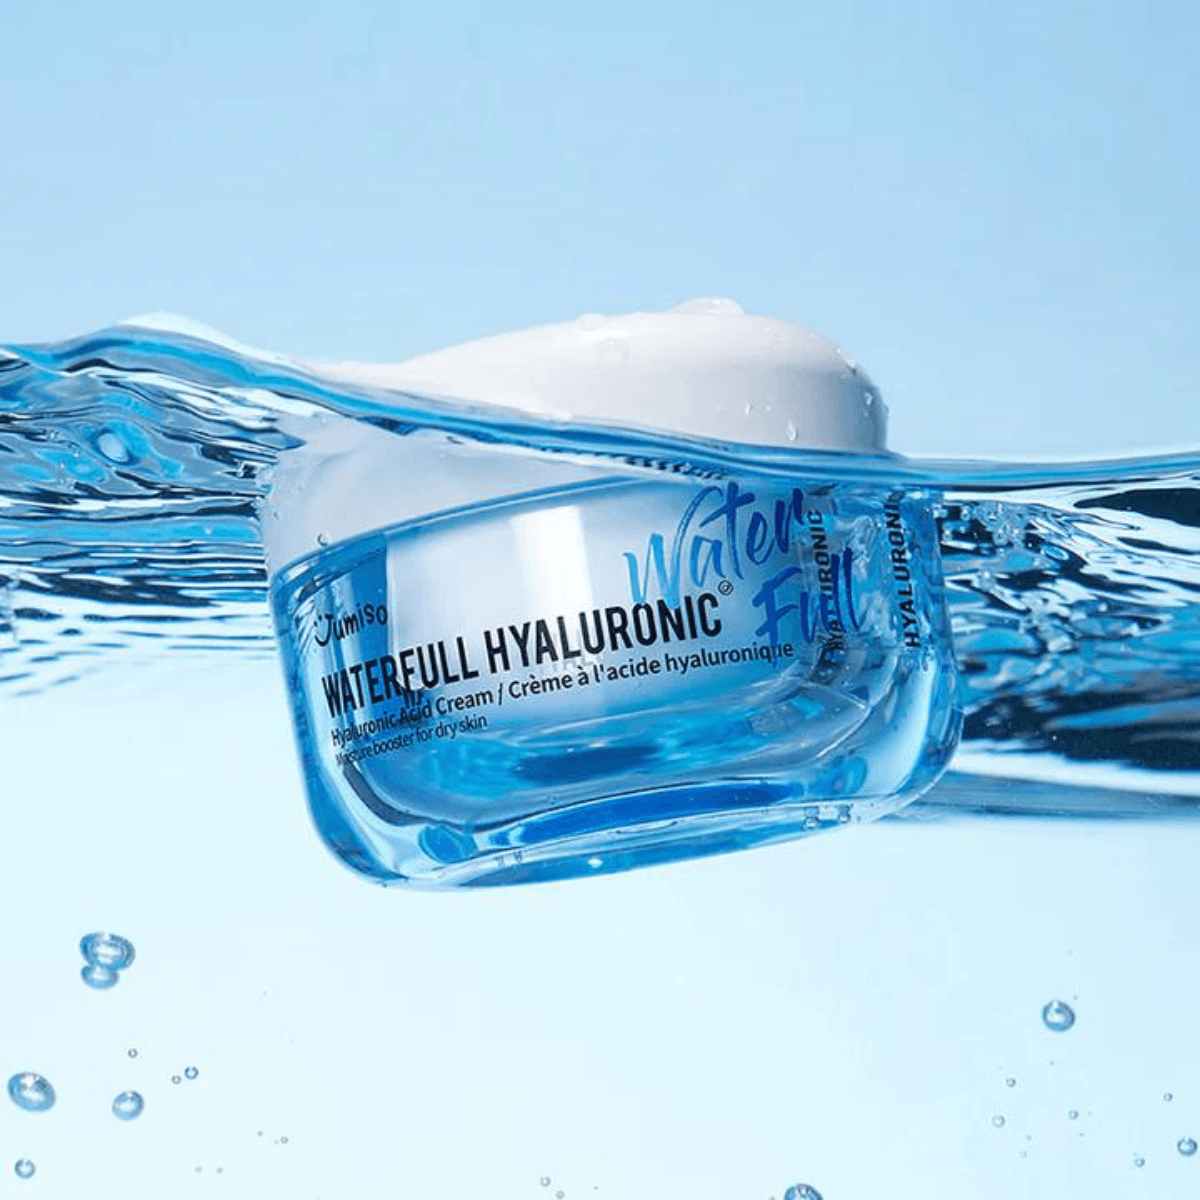 Waterfull Hyaluronic Cream - 50 g - K-Beauty Arabia